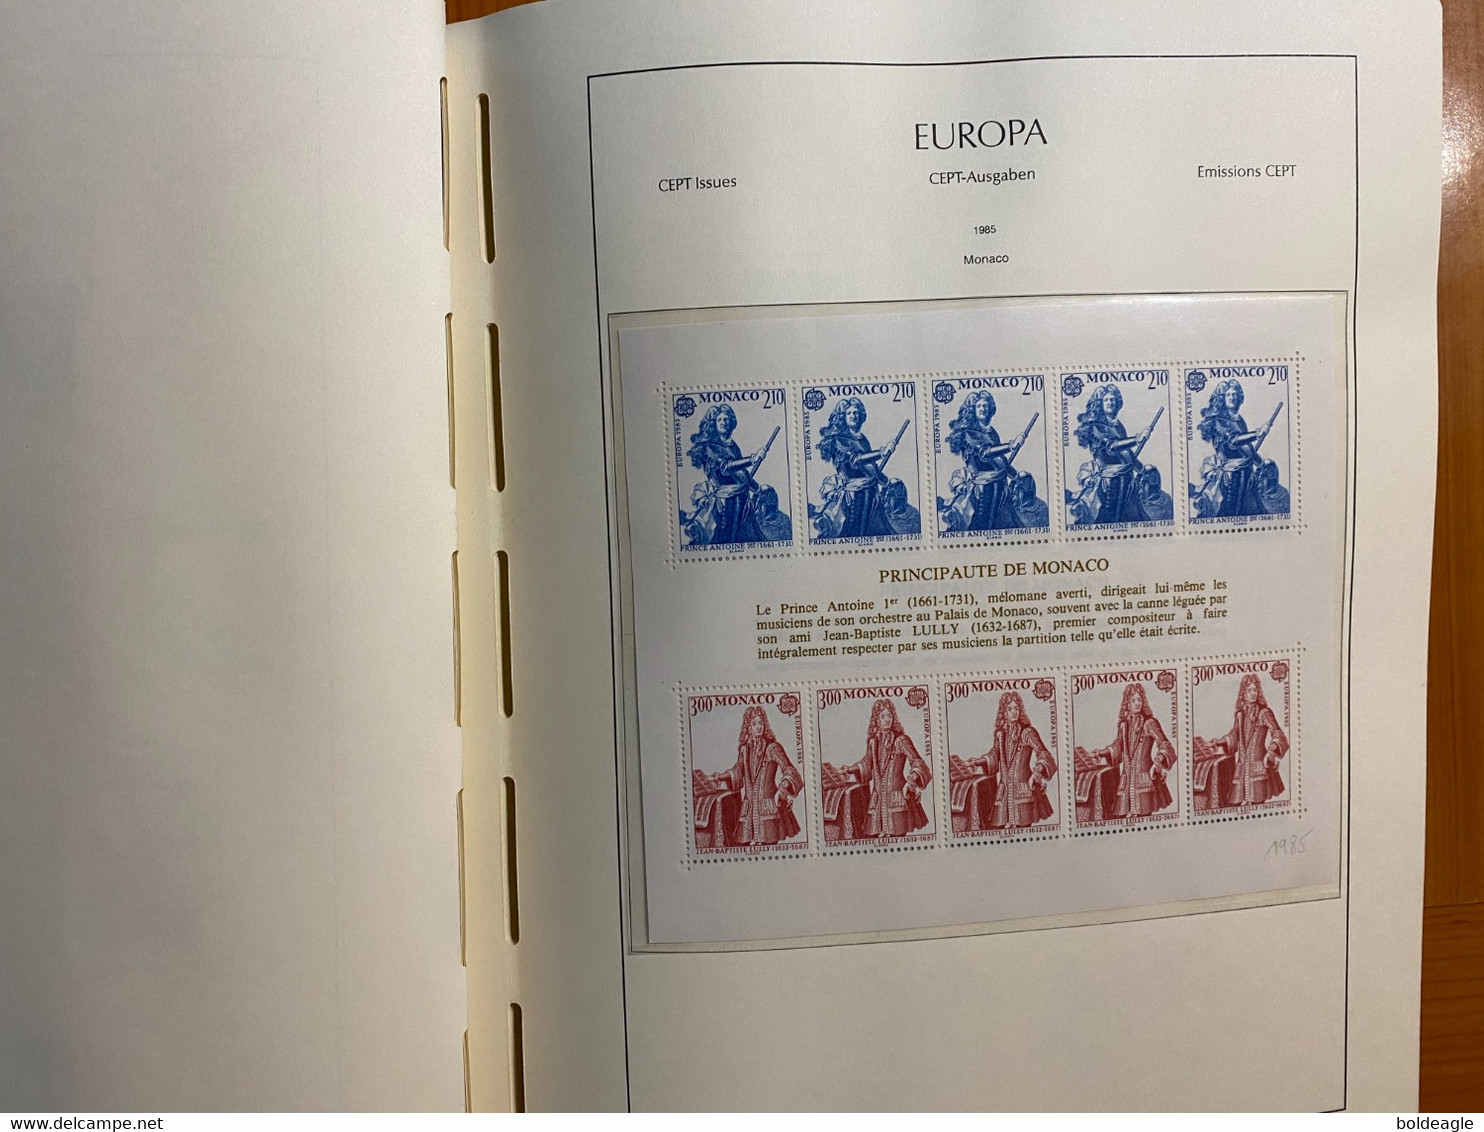 Europa -année complète 1985- 74 valeurs et 4 blocs  - neuf sans charnière LUXE